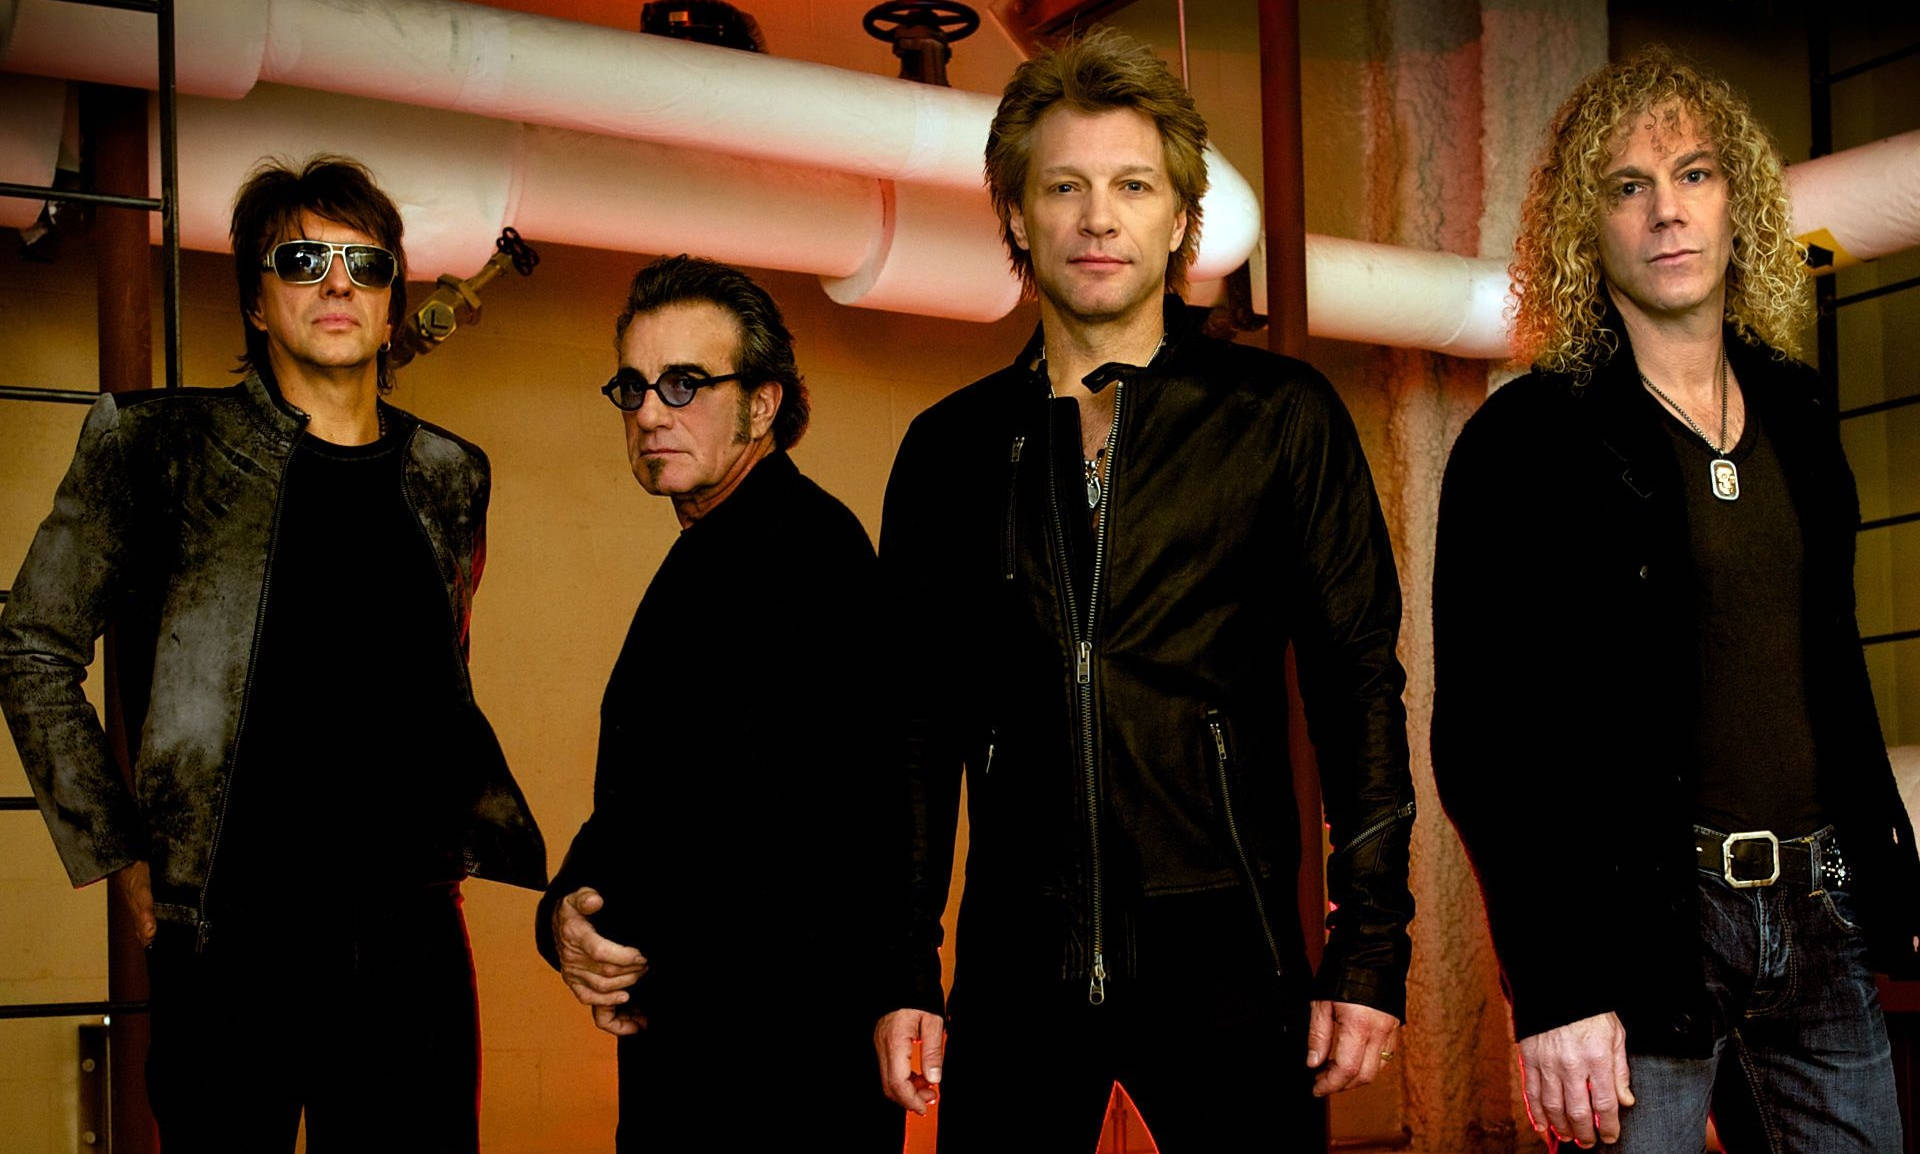 American Rock Band Bon Jovi Black Outfit Wallpaper